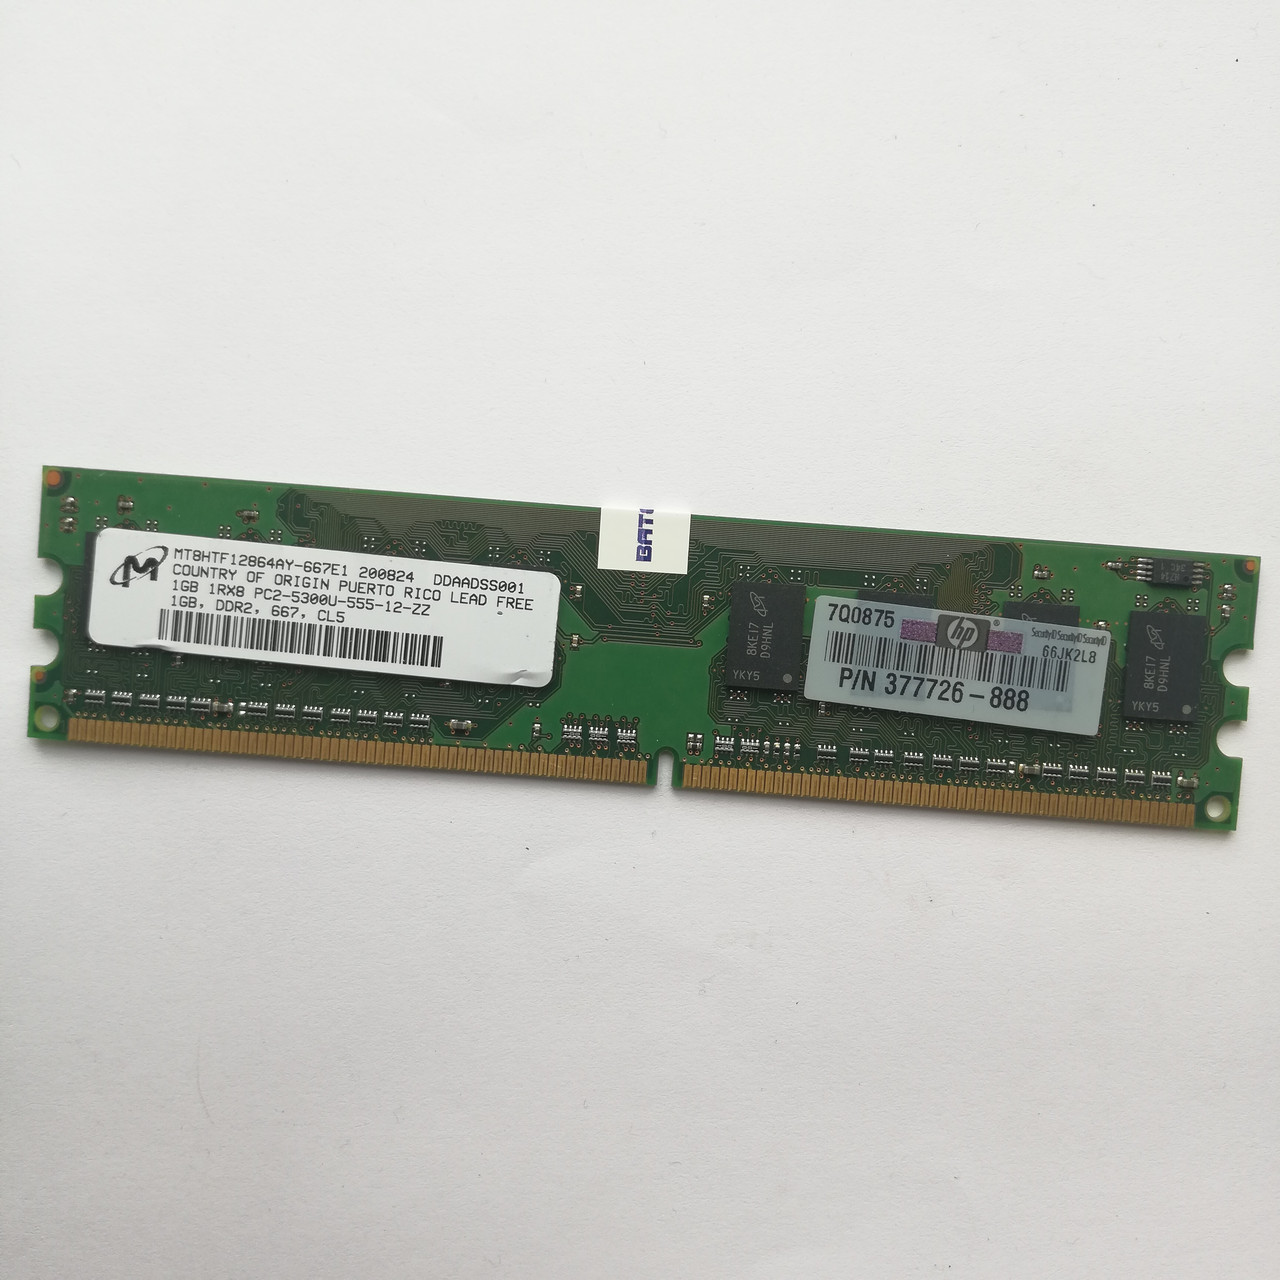 Оперативная память Micron DDR2 1Gb 667MHz PC2 5300U 1R8 CL5 (MT8HTF12864AY-667E1) Б/У, фото 1